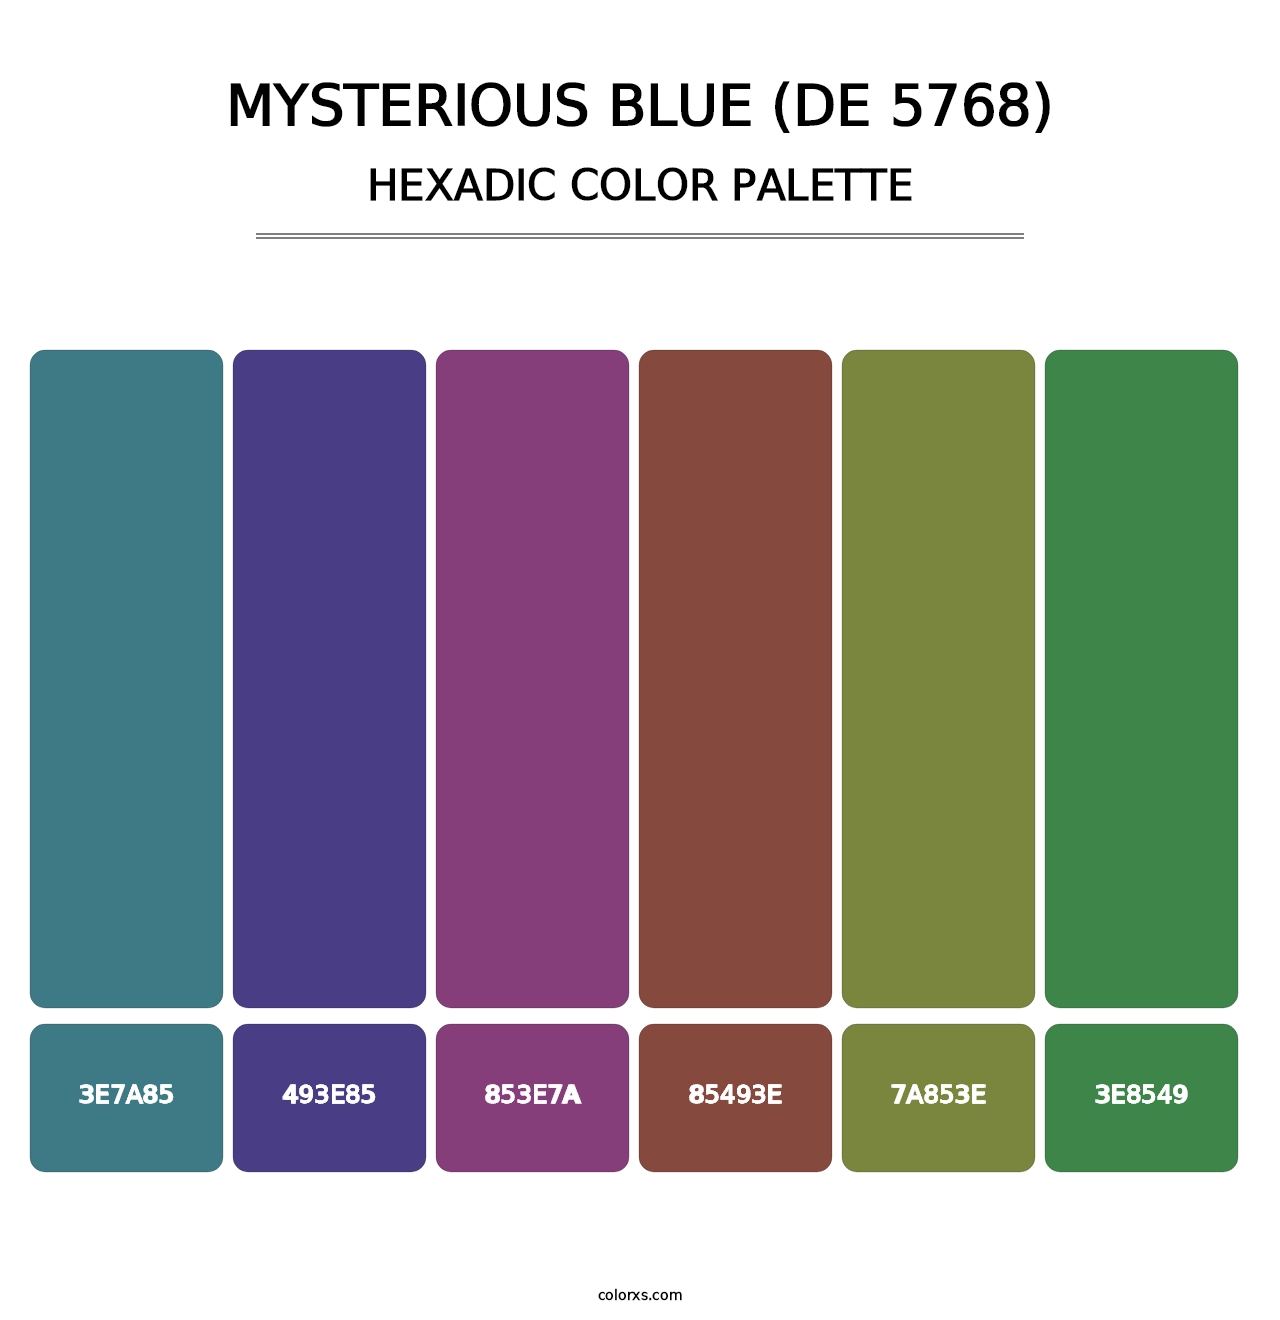 Mysterious Blue (DE 5768) - Hexadic Color Palette